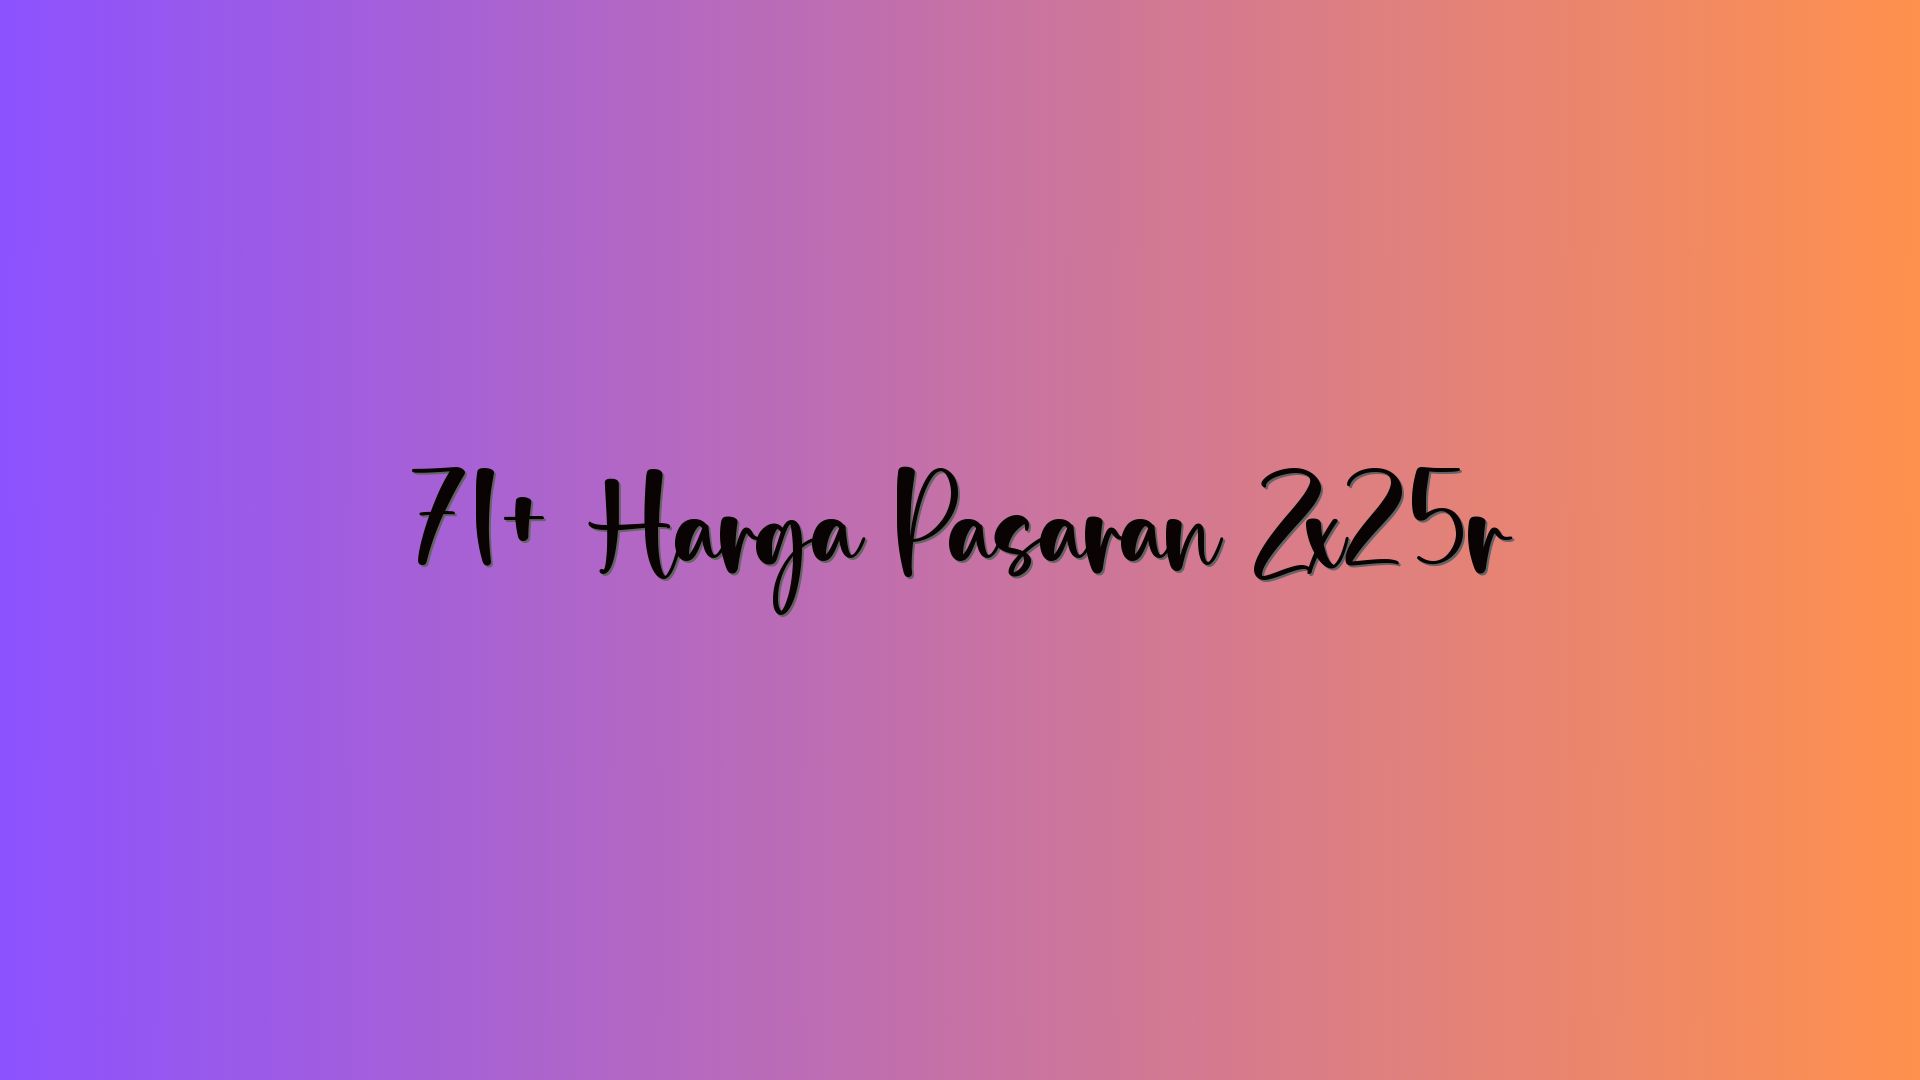 71+ Harga Pasaran Zx25r